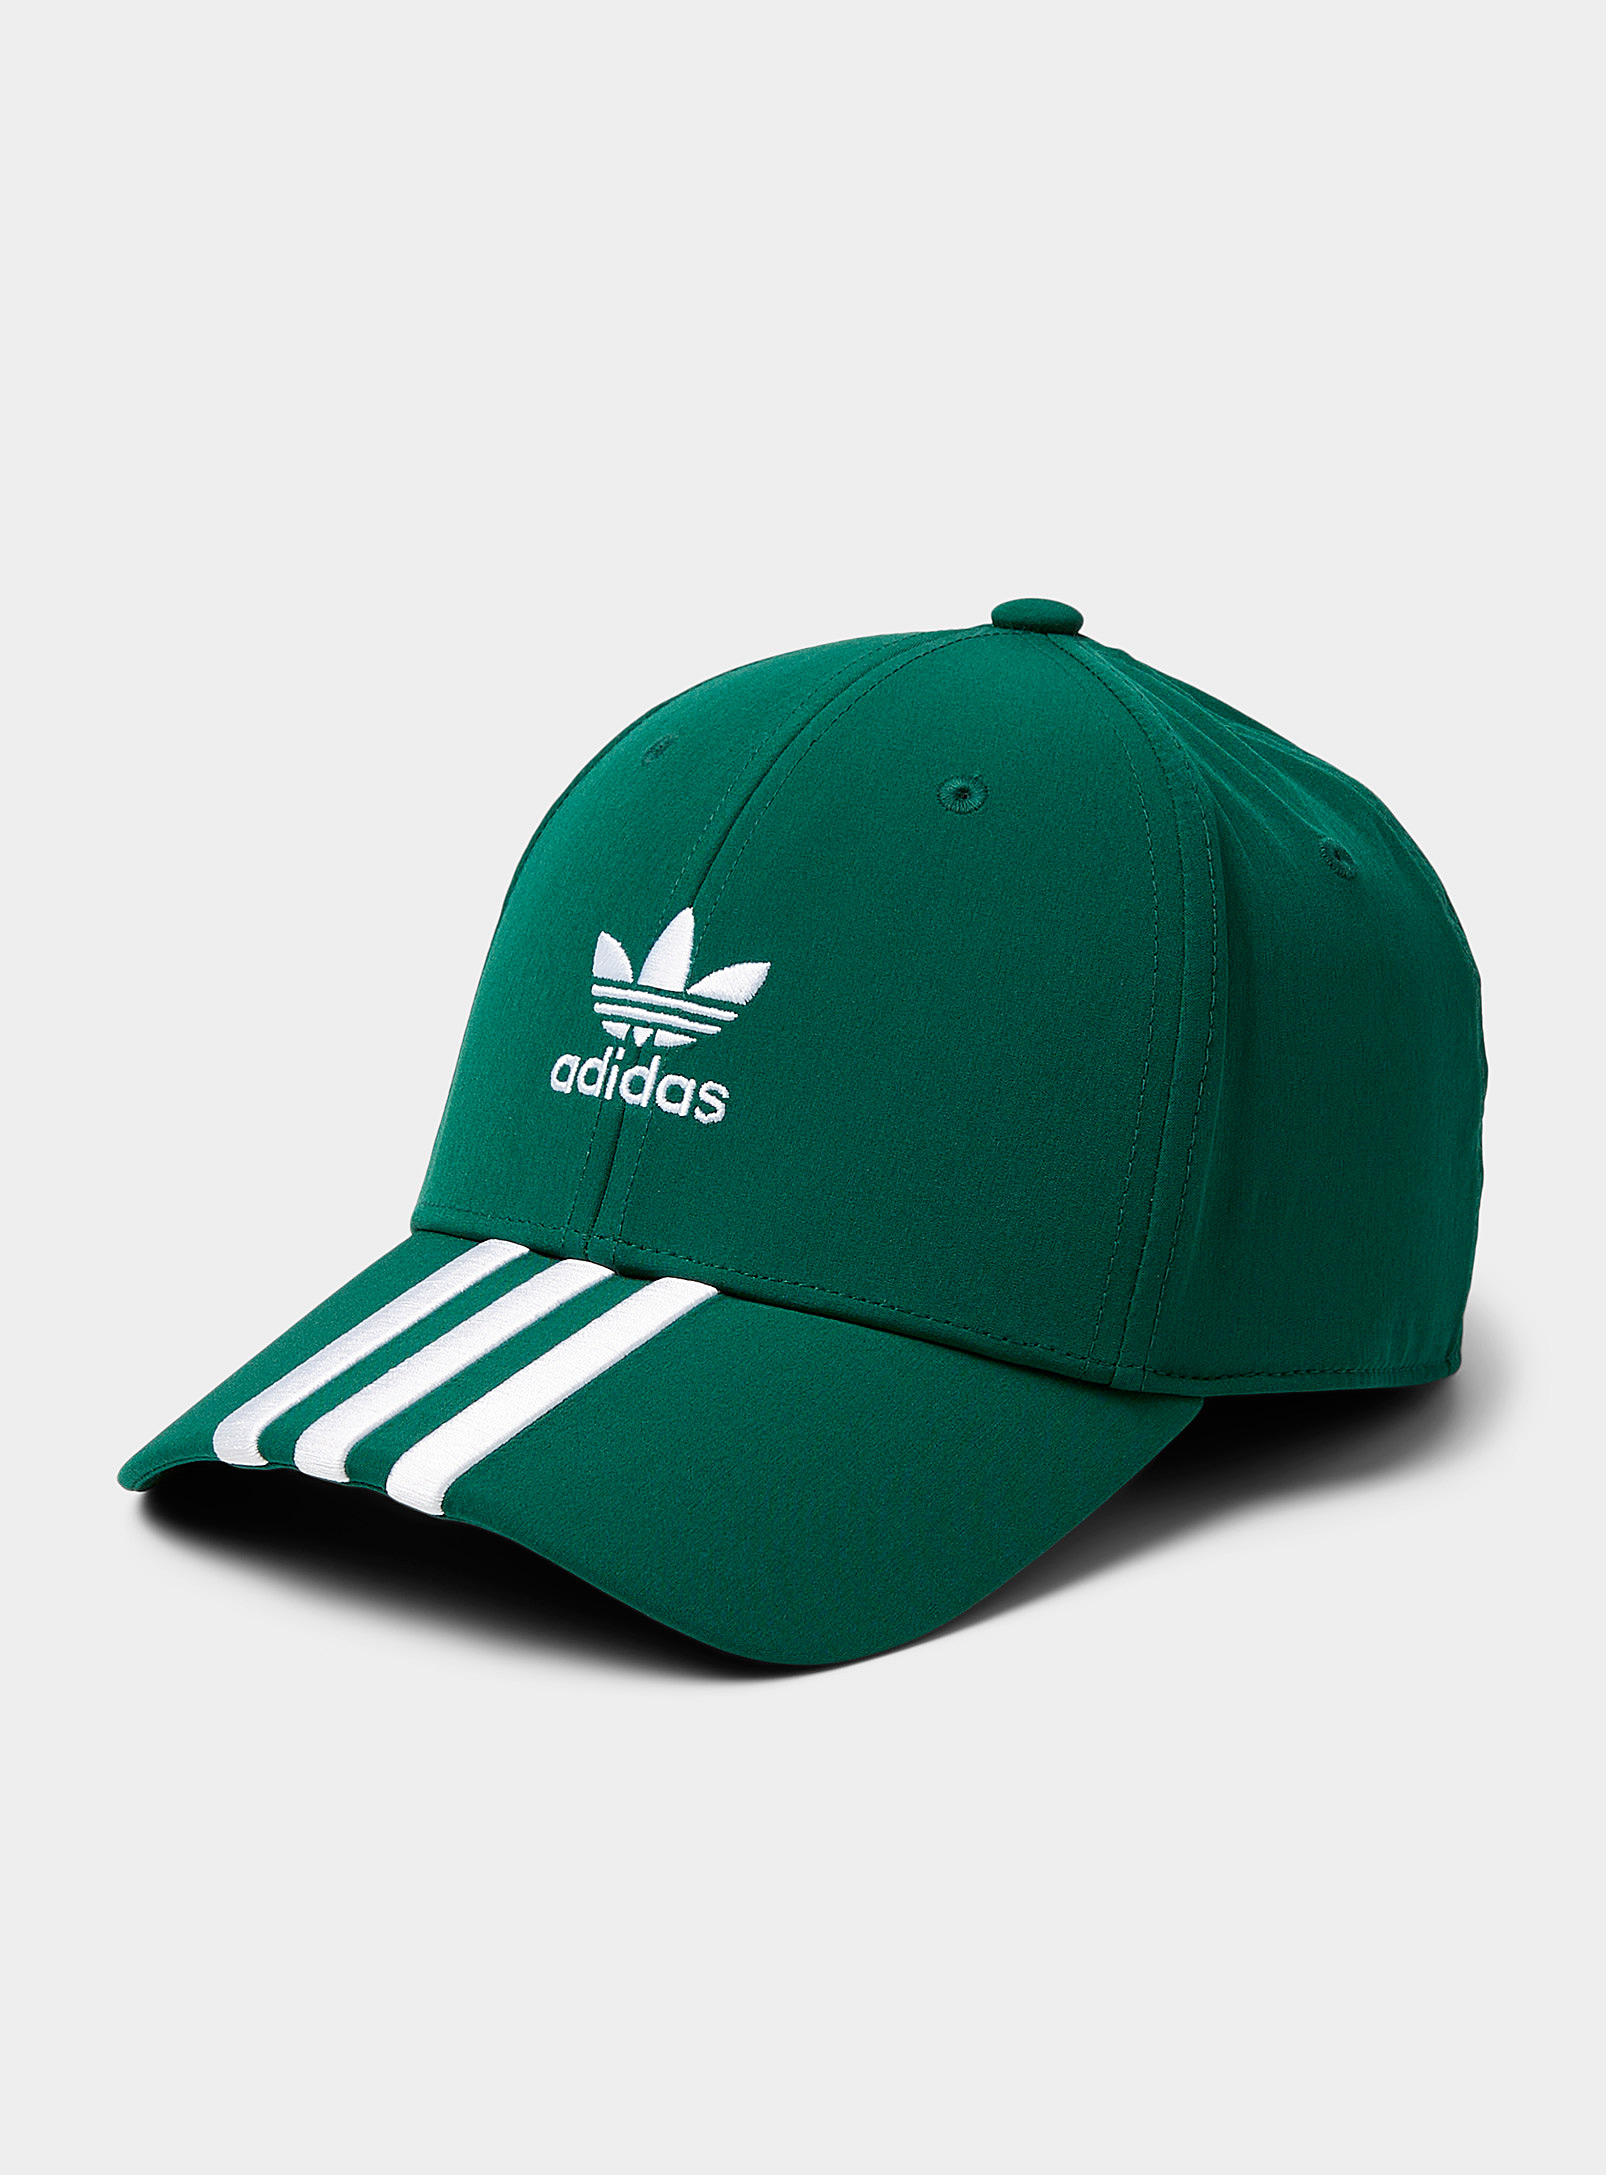 Adidas Originals - Men's Collegiate Green Adi Dassler cap